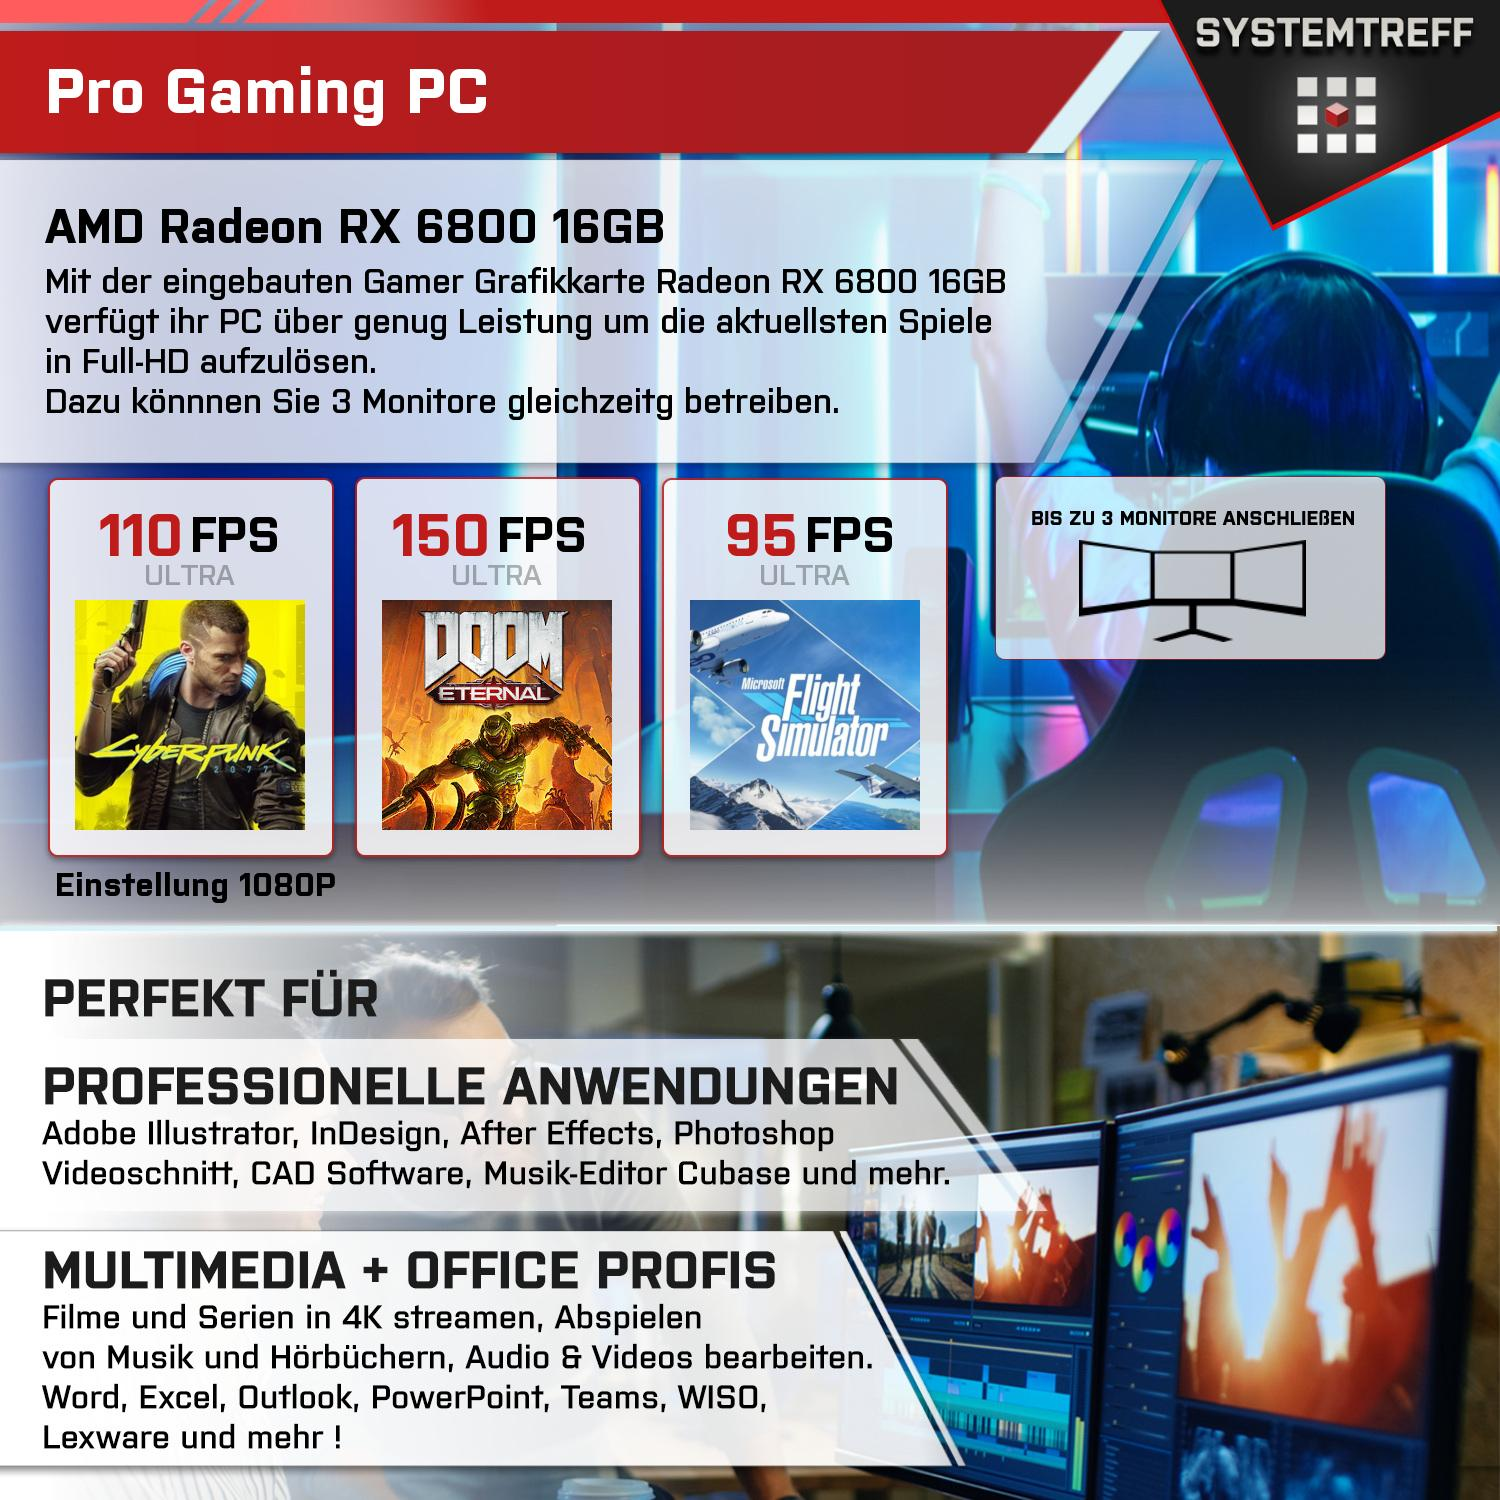 SYSTEMTREFF Gaming Komplett AMD mit Prozessor, 16GB mSSD, 6800 7 RX 7700X GDDR6, 7700X, GB 32 GB AMD RAM, 1000 PC Ryzen 16 GB Radeon Komplett